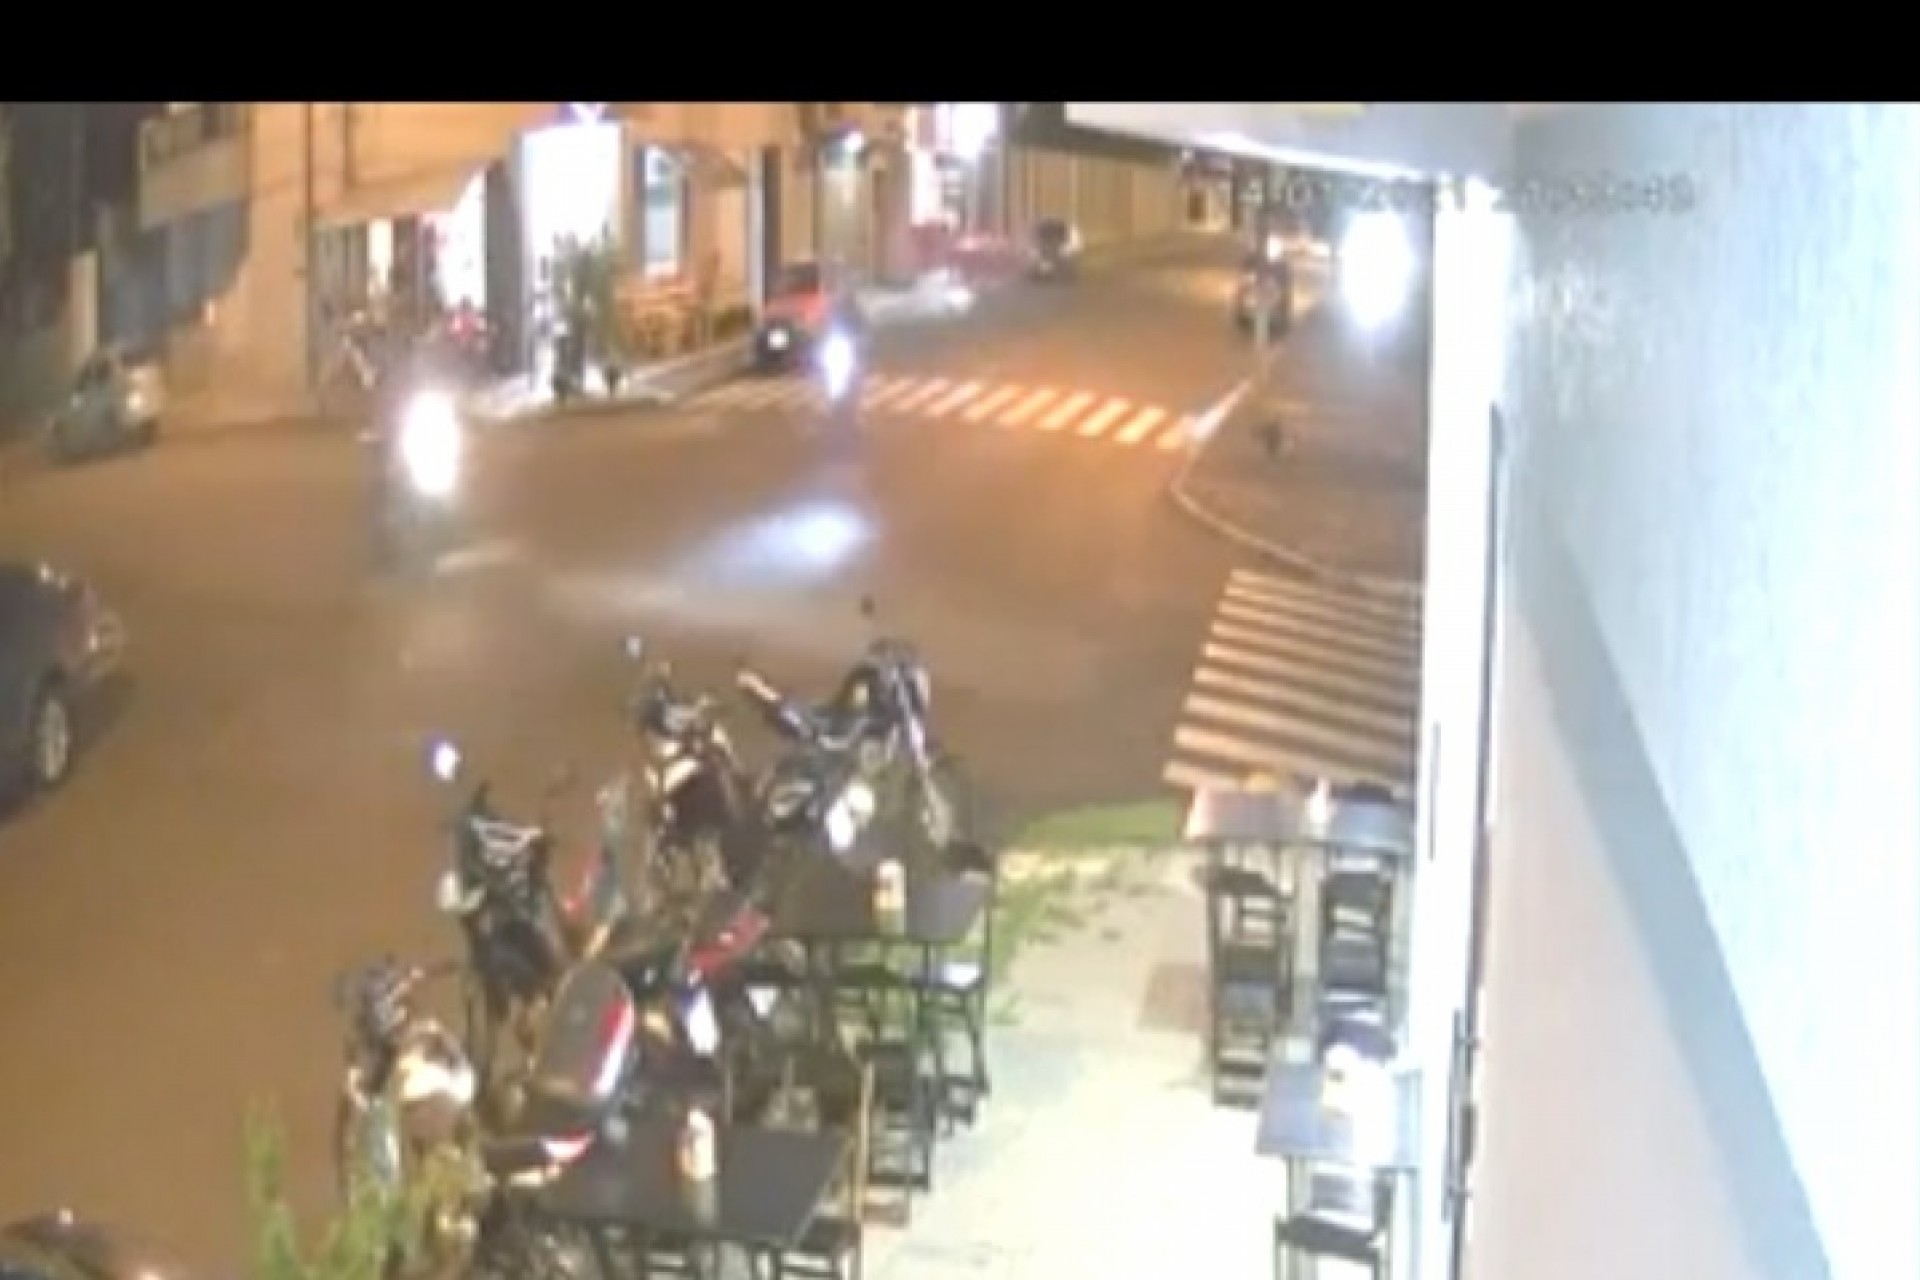 Medianeira: Motociclista invade preferencial e causa acidente no Bairro Cidade Alta